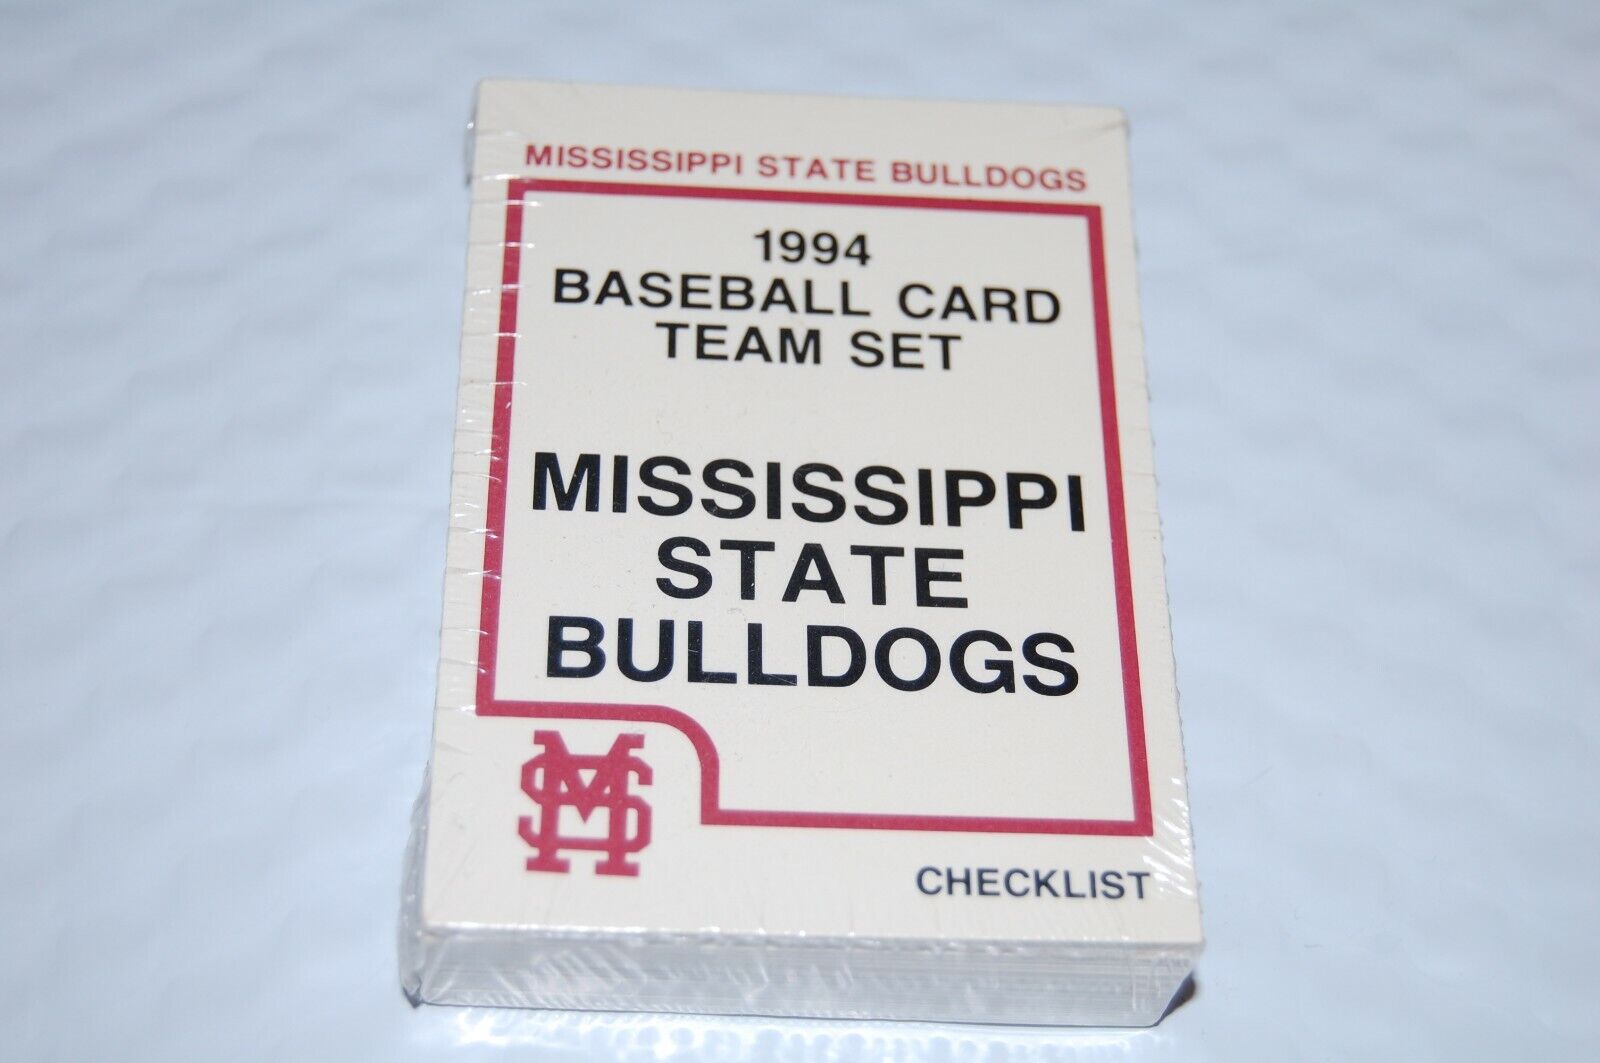 1994 Mississippi State Bulldogs Baseball Cards TEAM SET - Brand New - Sealed